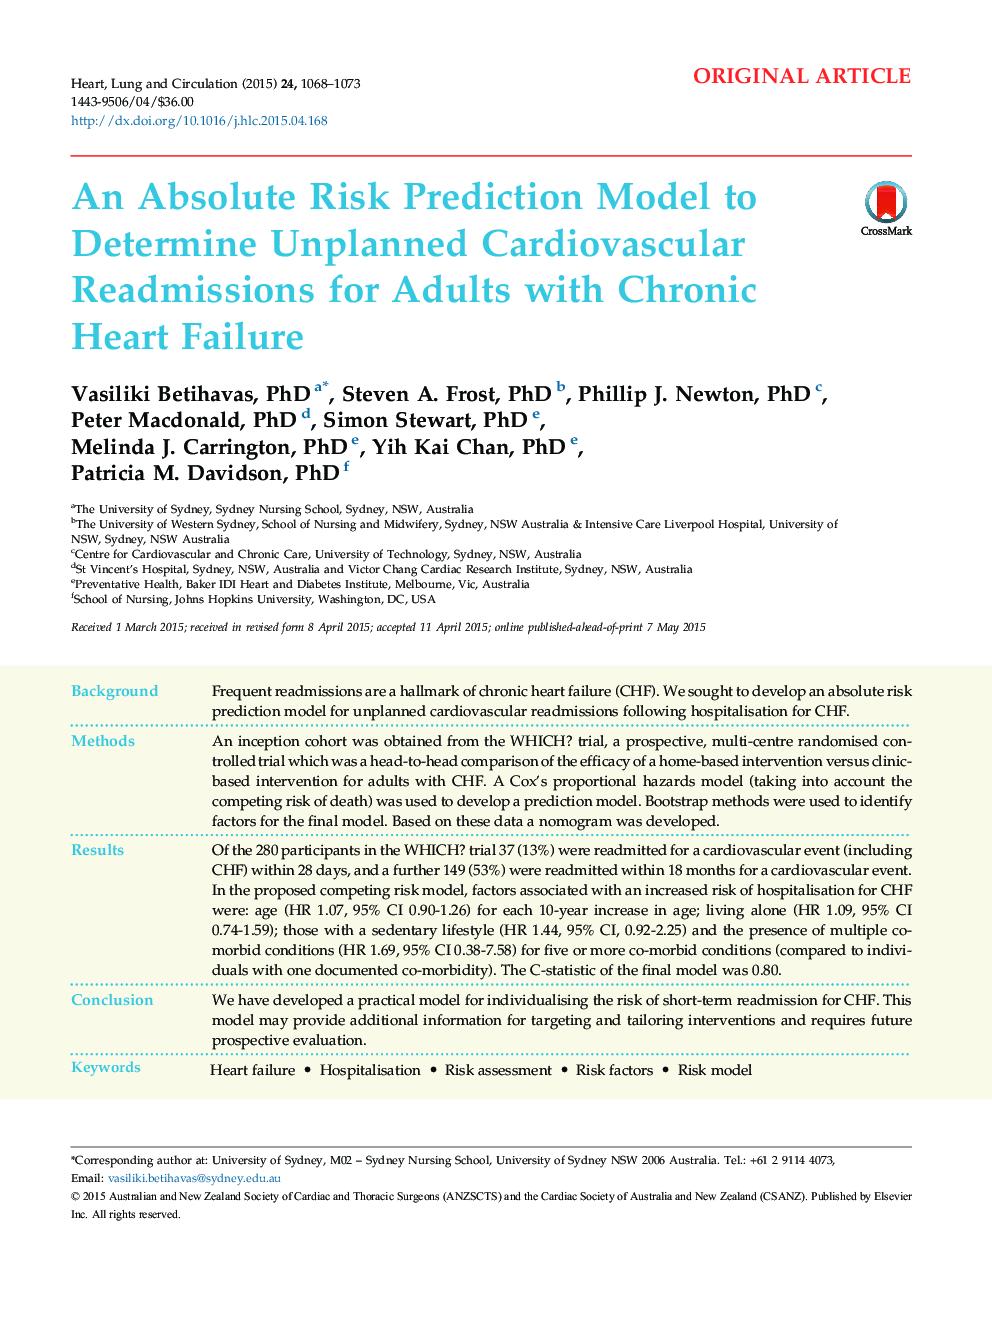 مدل پیشبینی خطر مطلق برای تعیین زمانبندی غیرقانونی قلب و عروق برای بزرگسالان مبتلا به نارسایی مزمن قلبی 